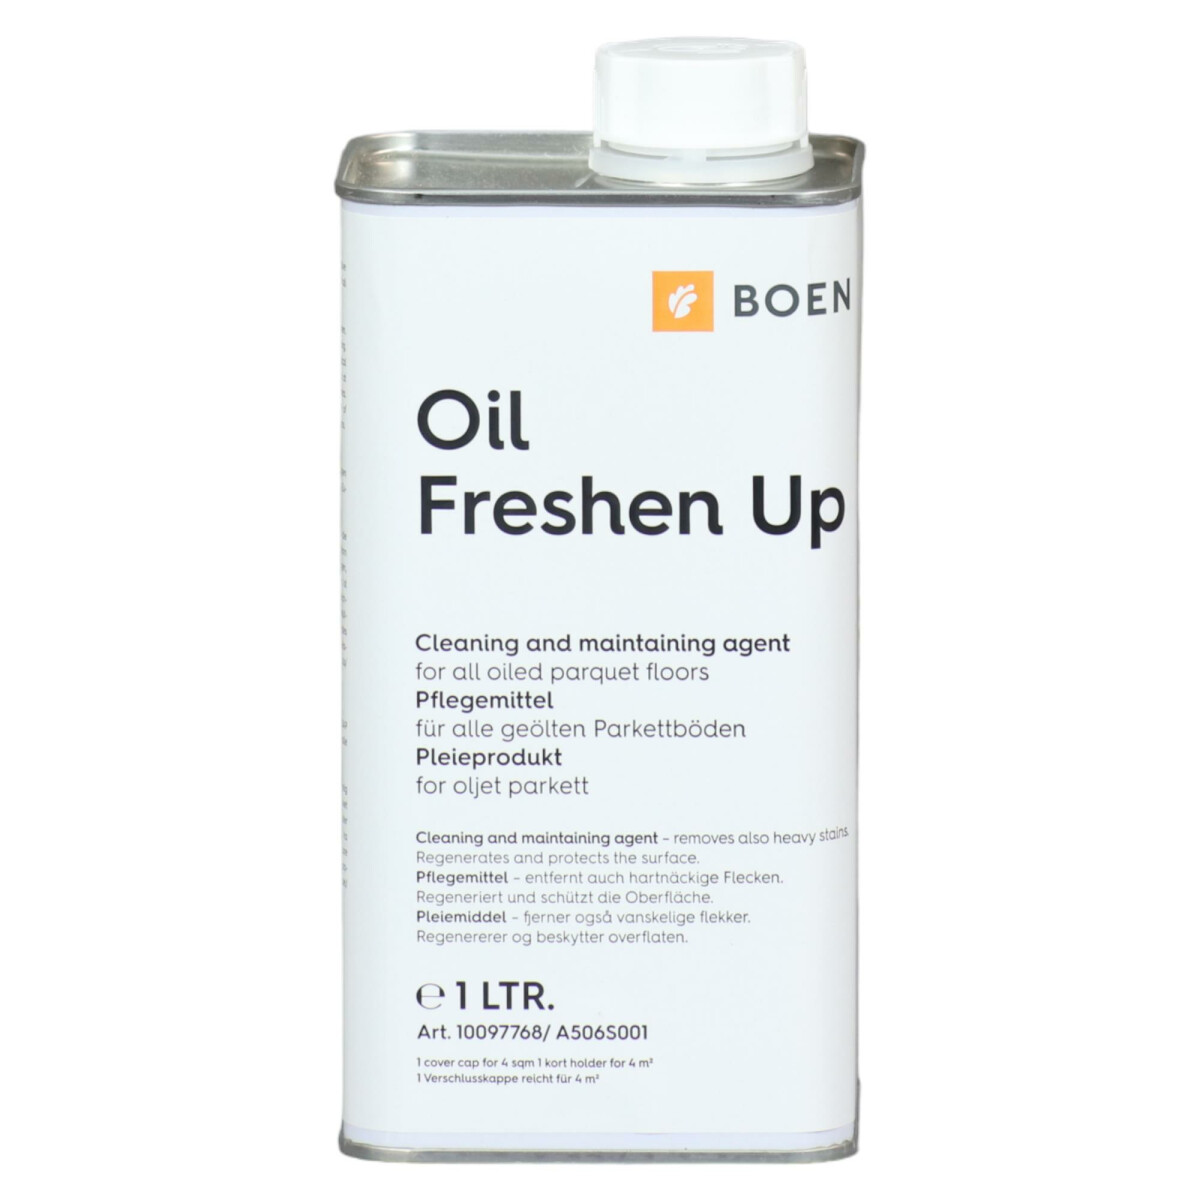 Boen oil freshen up